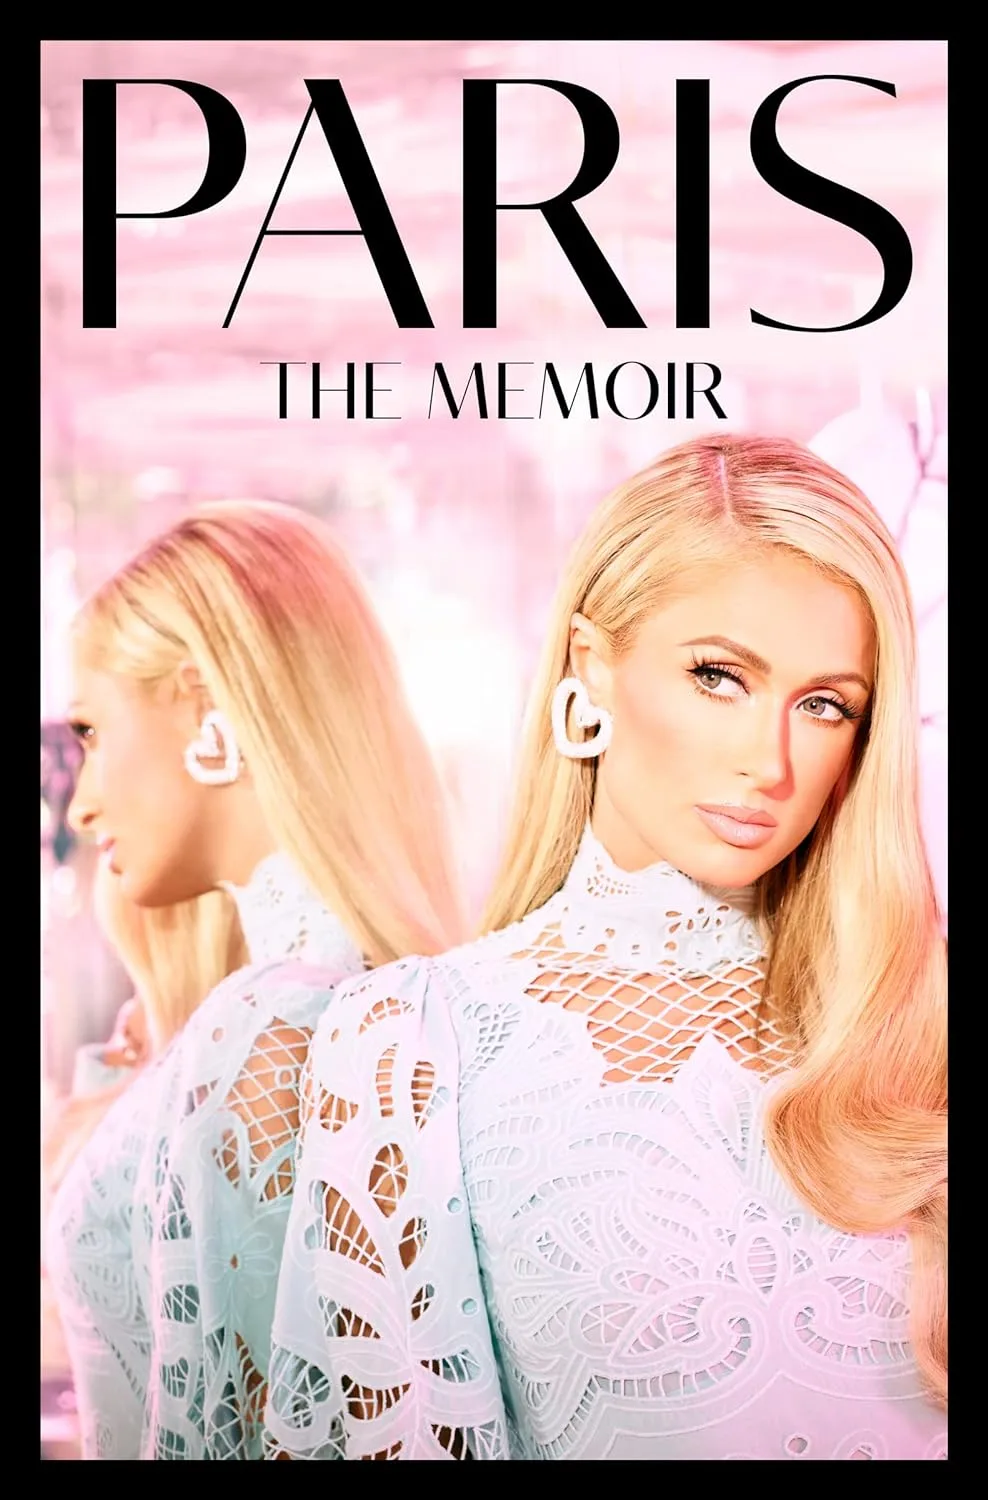 Paris Hilton vende suas memórias para série de TV